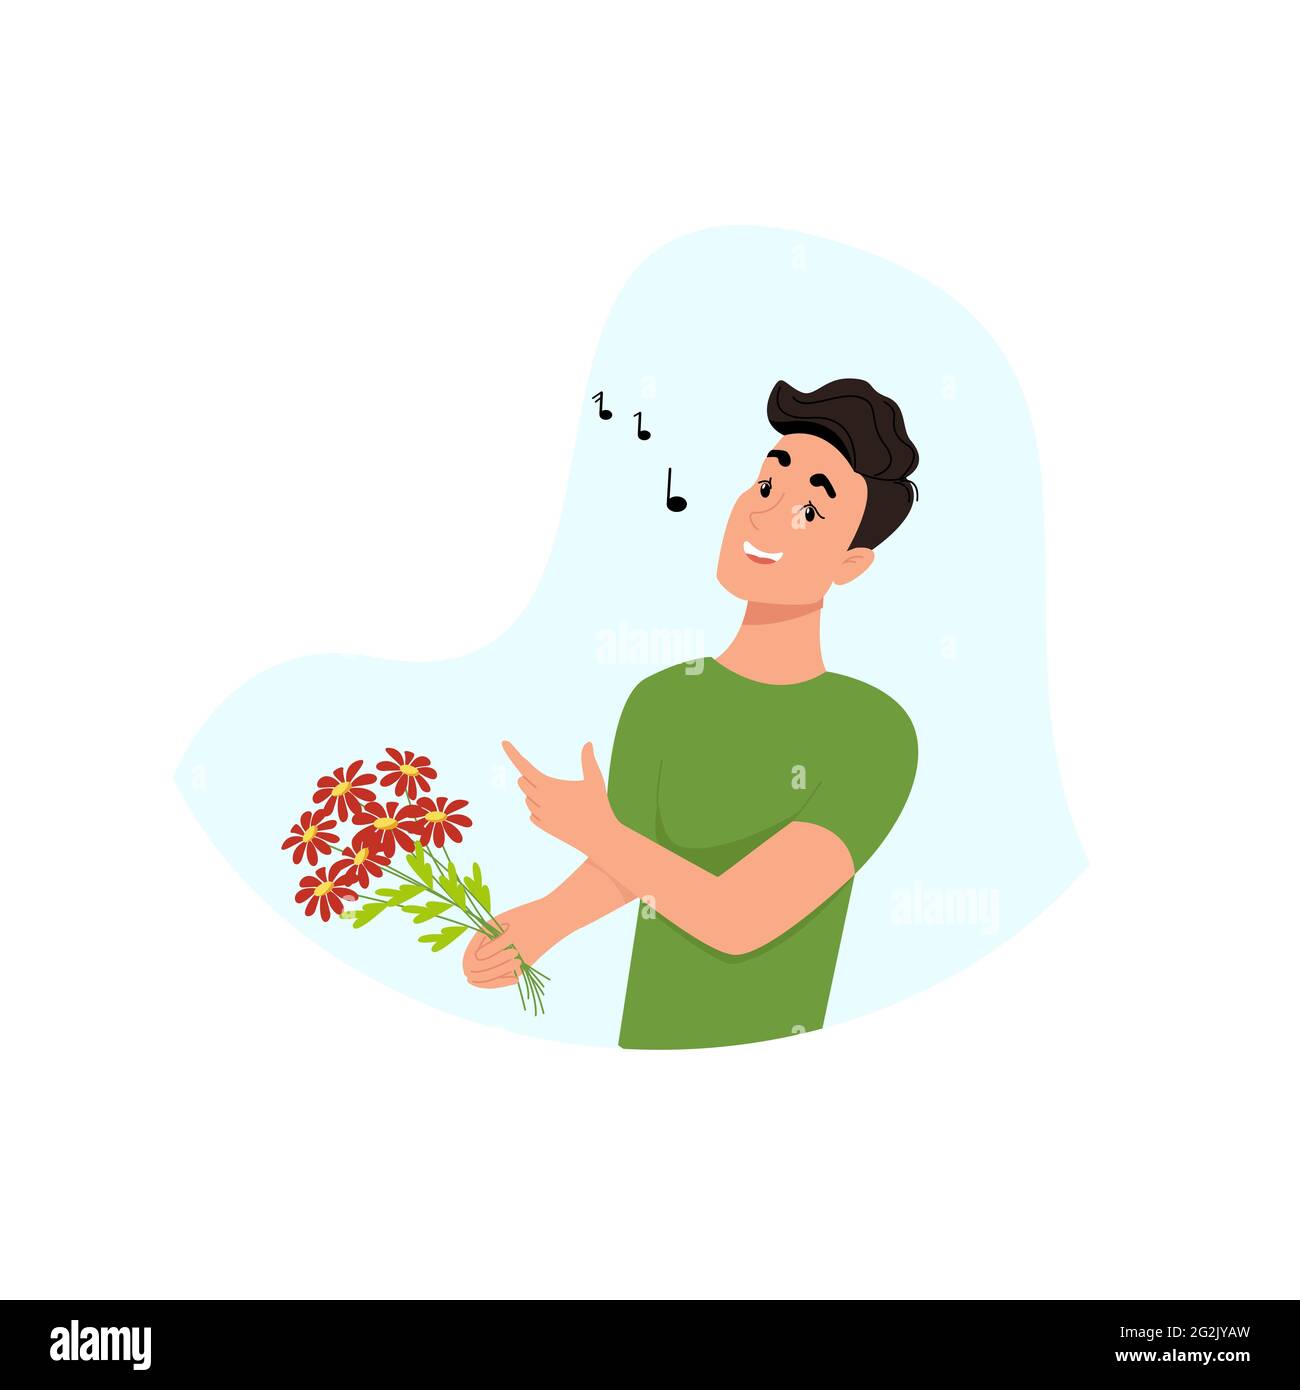 Junger Mann singt, Kerl mit Blumen in den Händen, glücklicher Mann. Vektor-Charakter im flachen Stil, Cartoon Stock Vektor